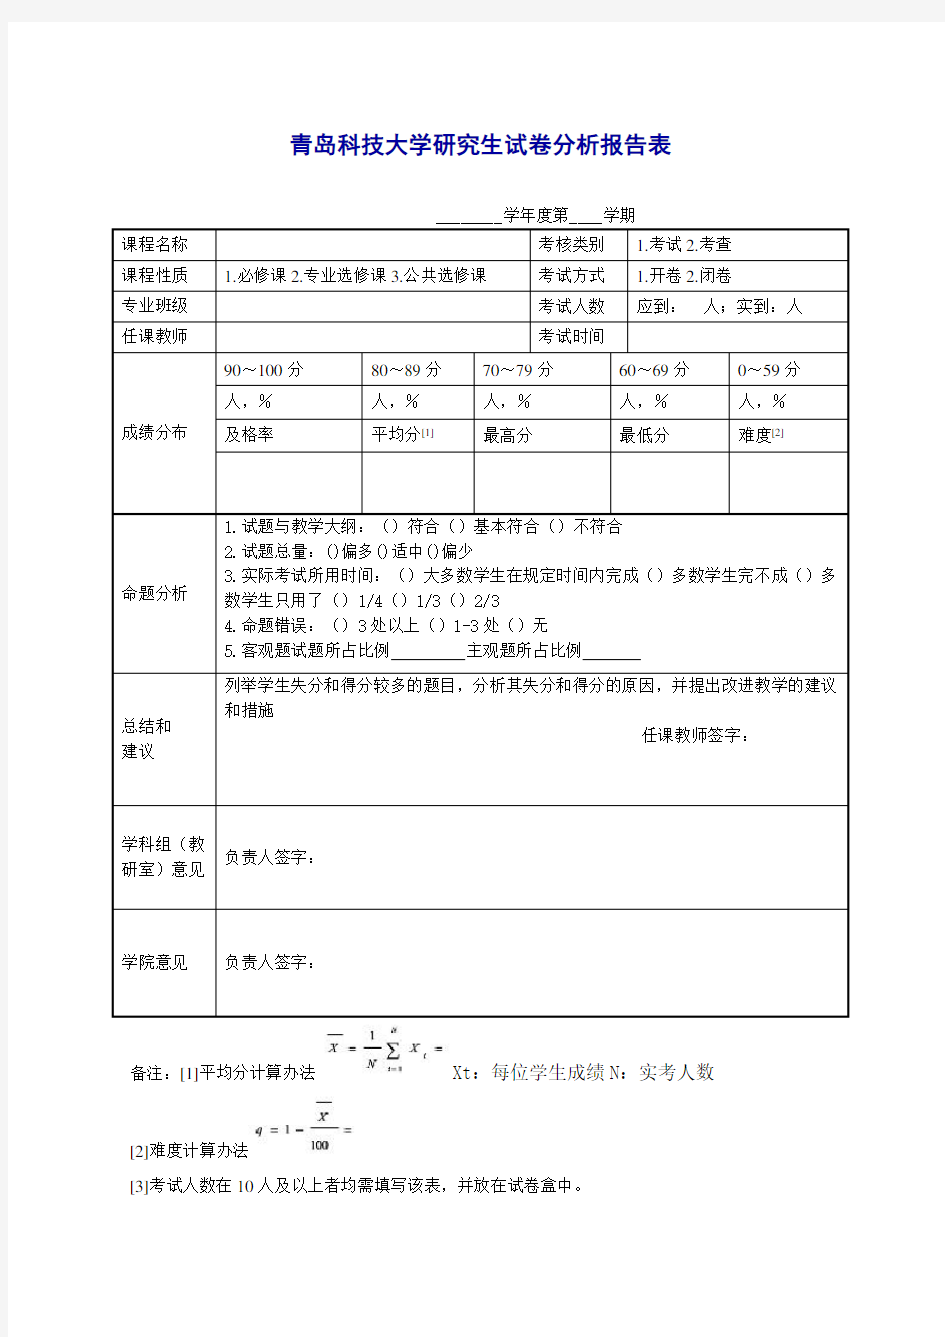 青岛科技大学研究生试卷分析报告表